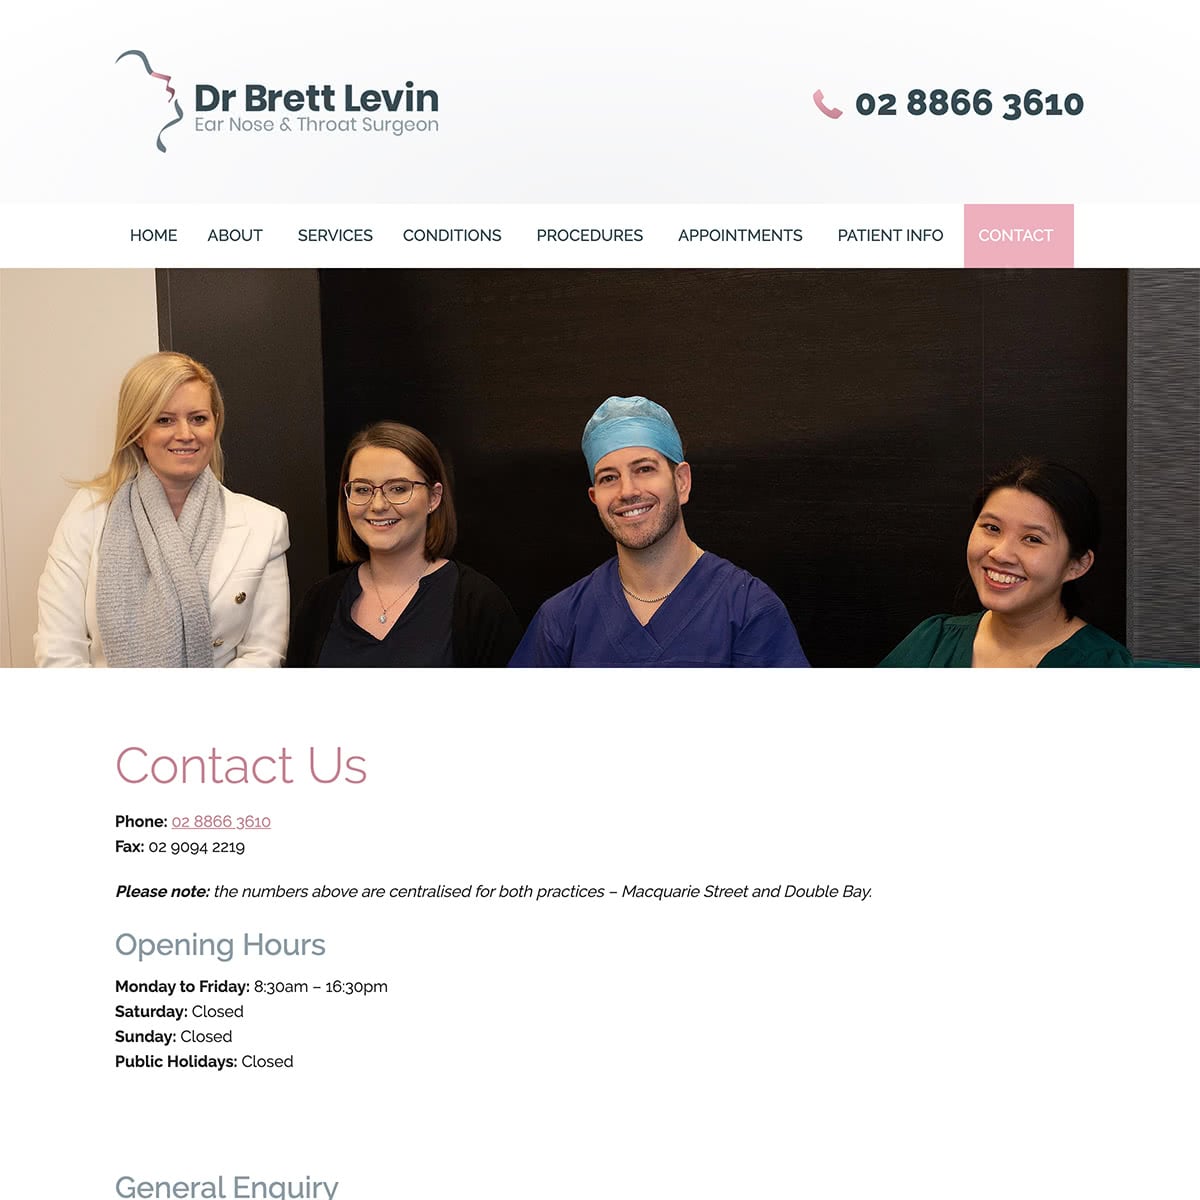 Dr Brett Levin - Contact Us